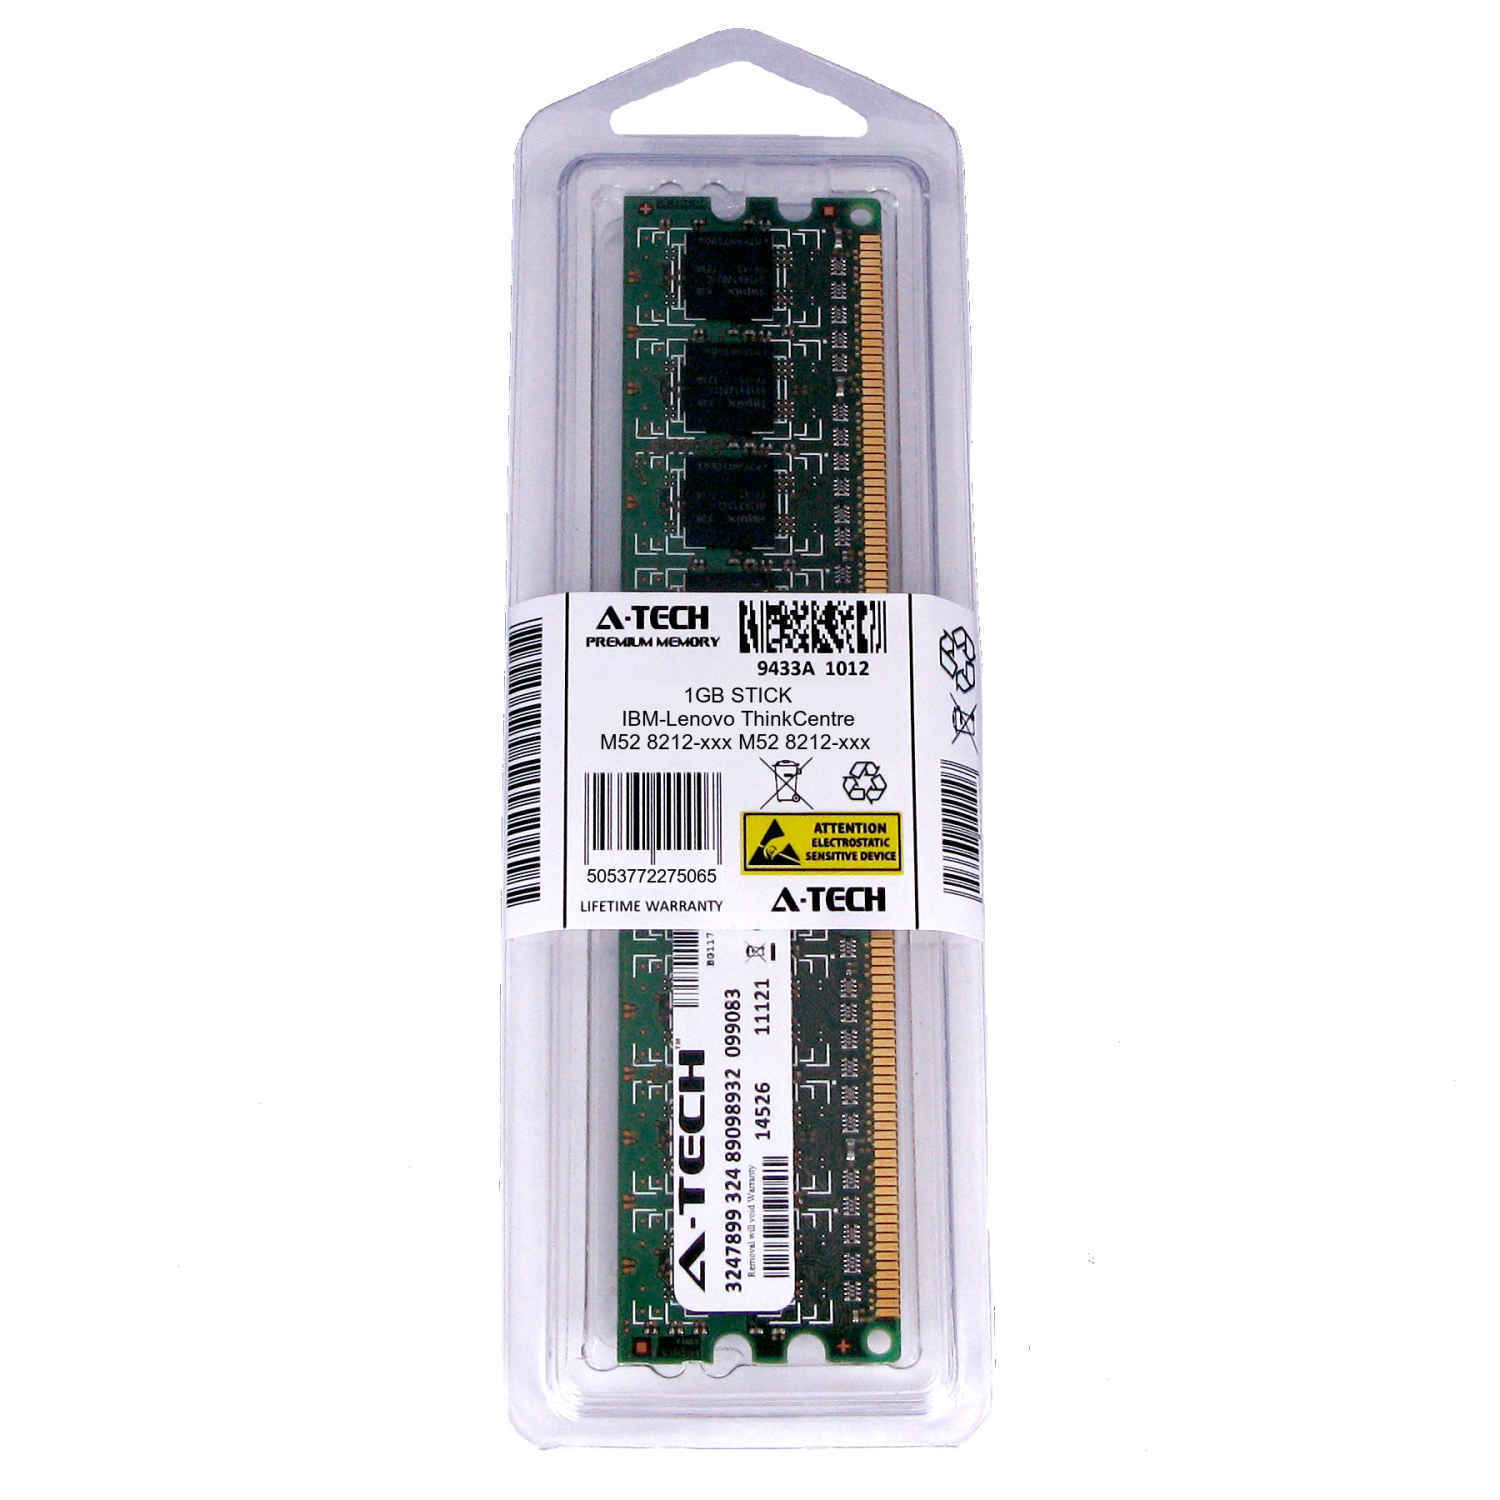 1GB DIMM IBM-Lenovo ThinkCentre M52 8212-xxx 8213-xxx 8214-xxx Ram Memory